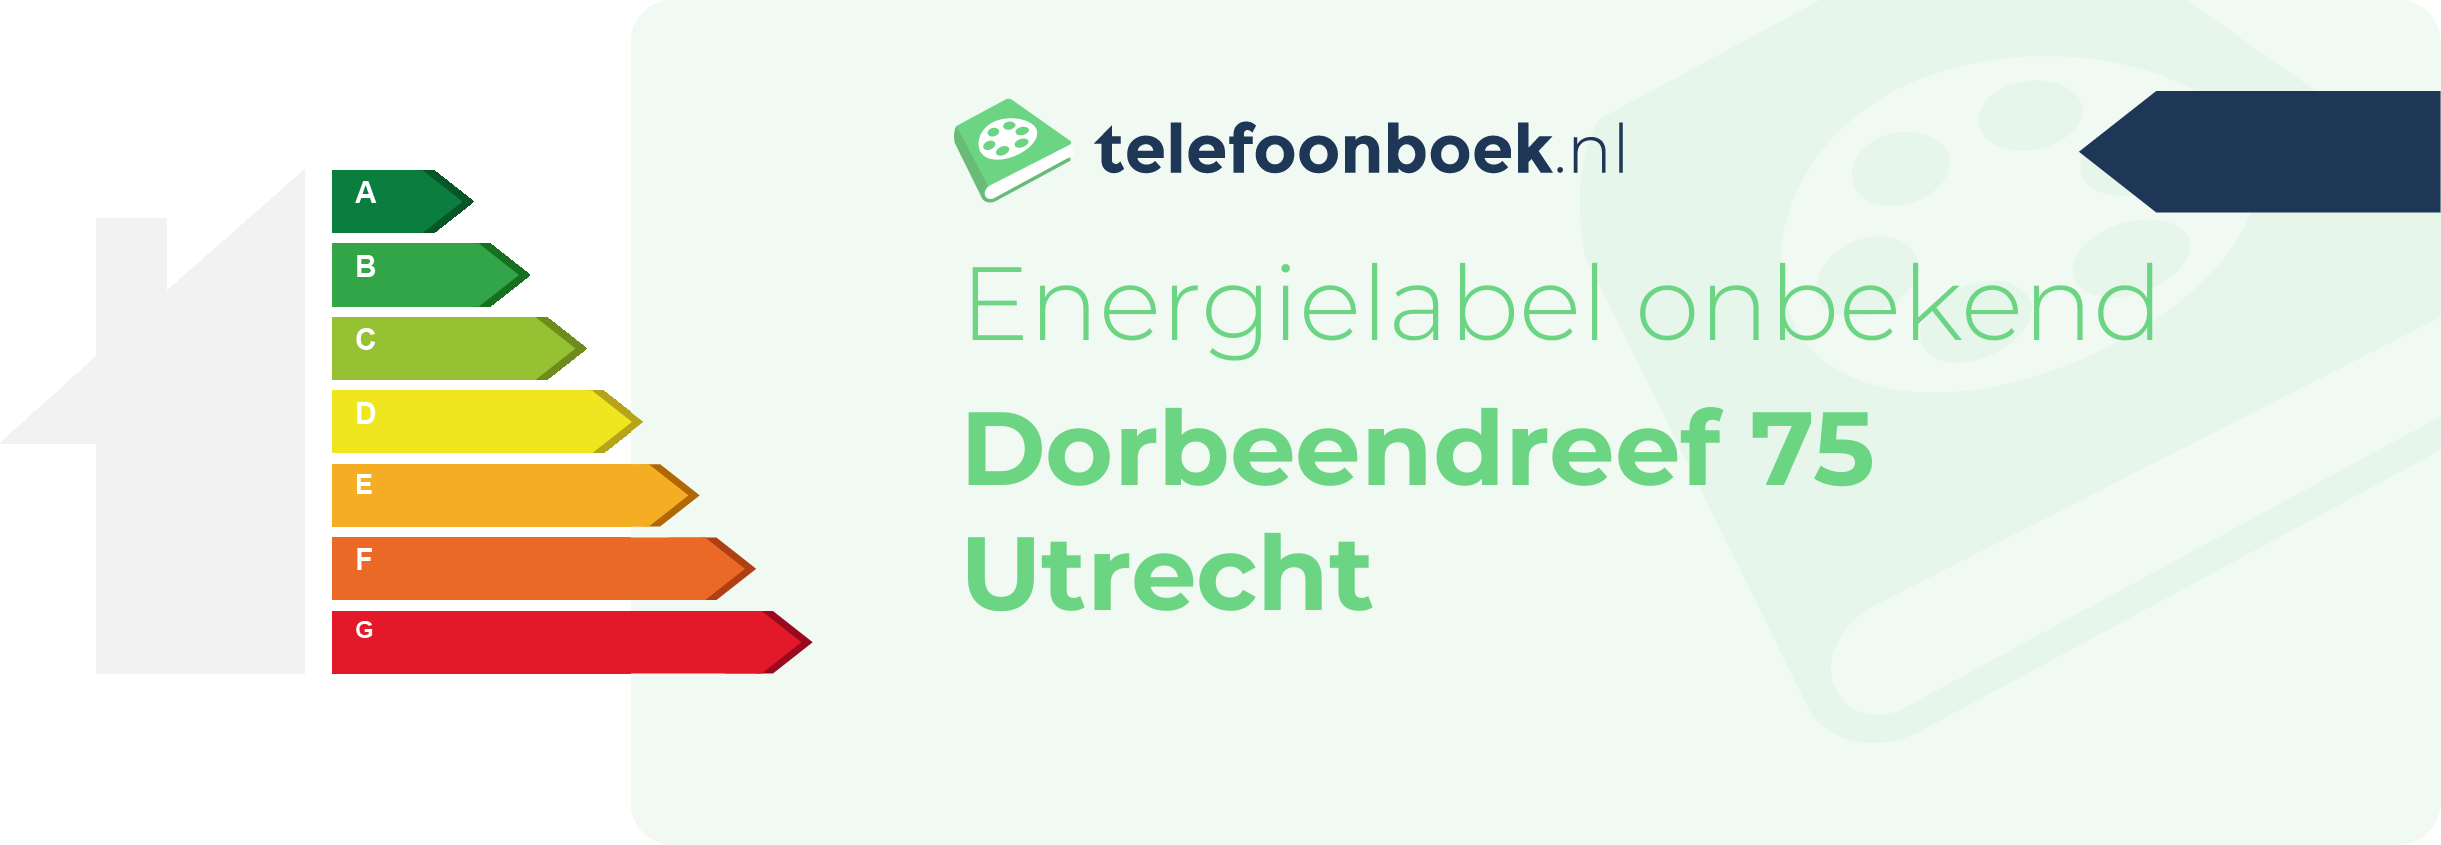 Energielabel Dorbeendreef 75 Utrecht